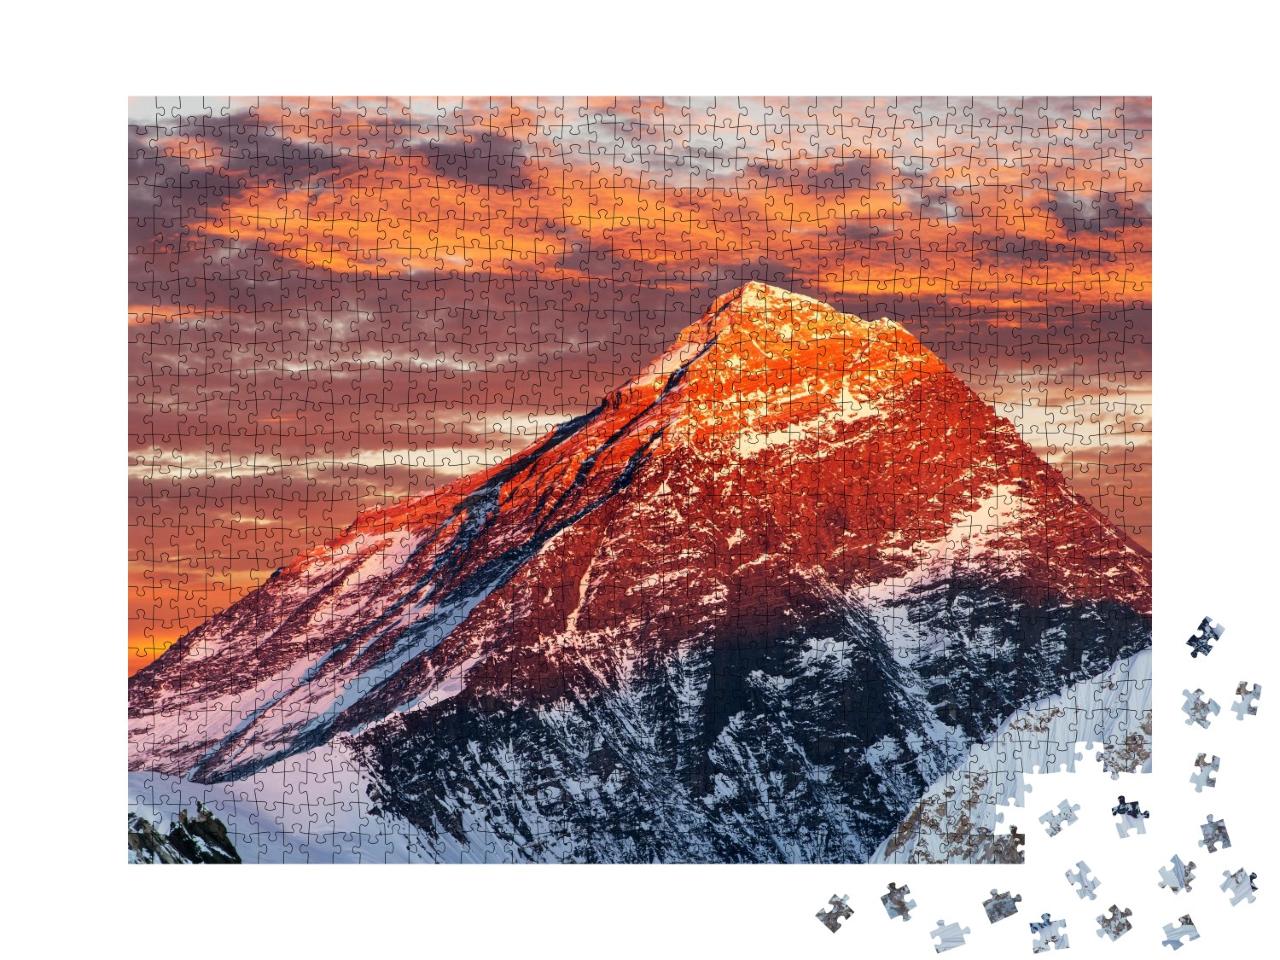 Puzzle de 1000 pièces « Soirée sur le mont Everest, Népal »